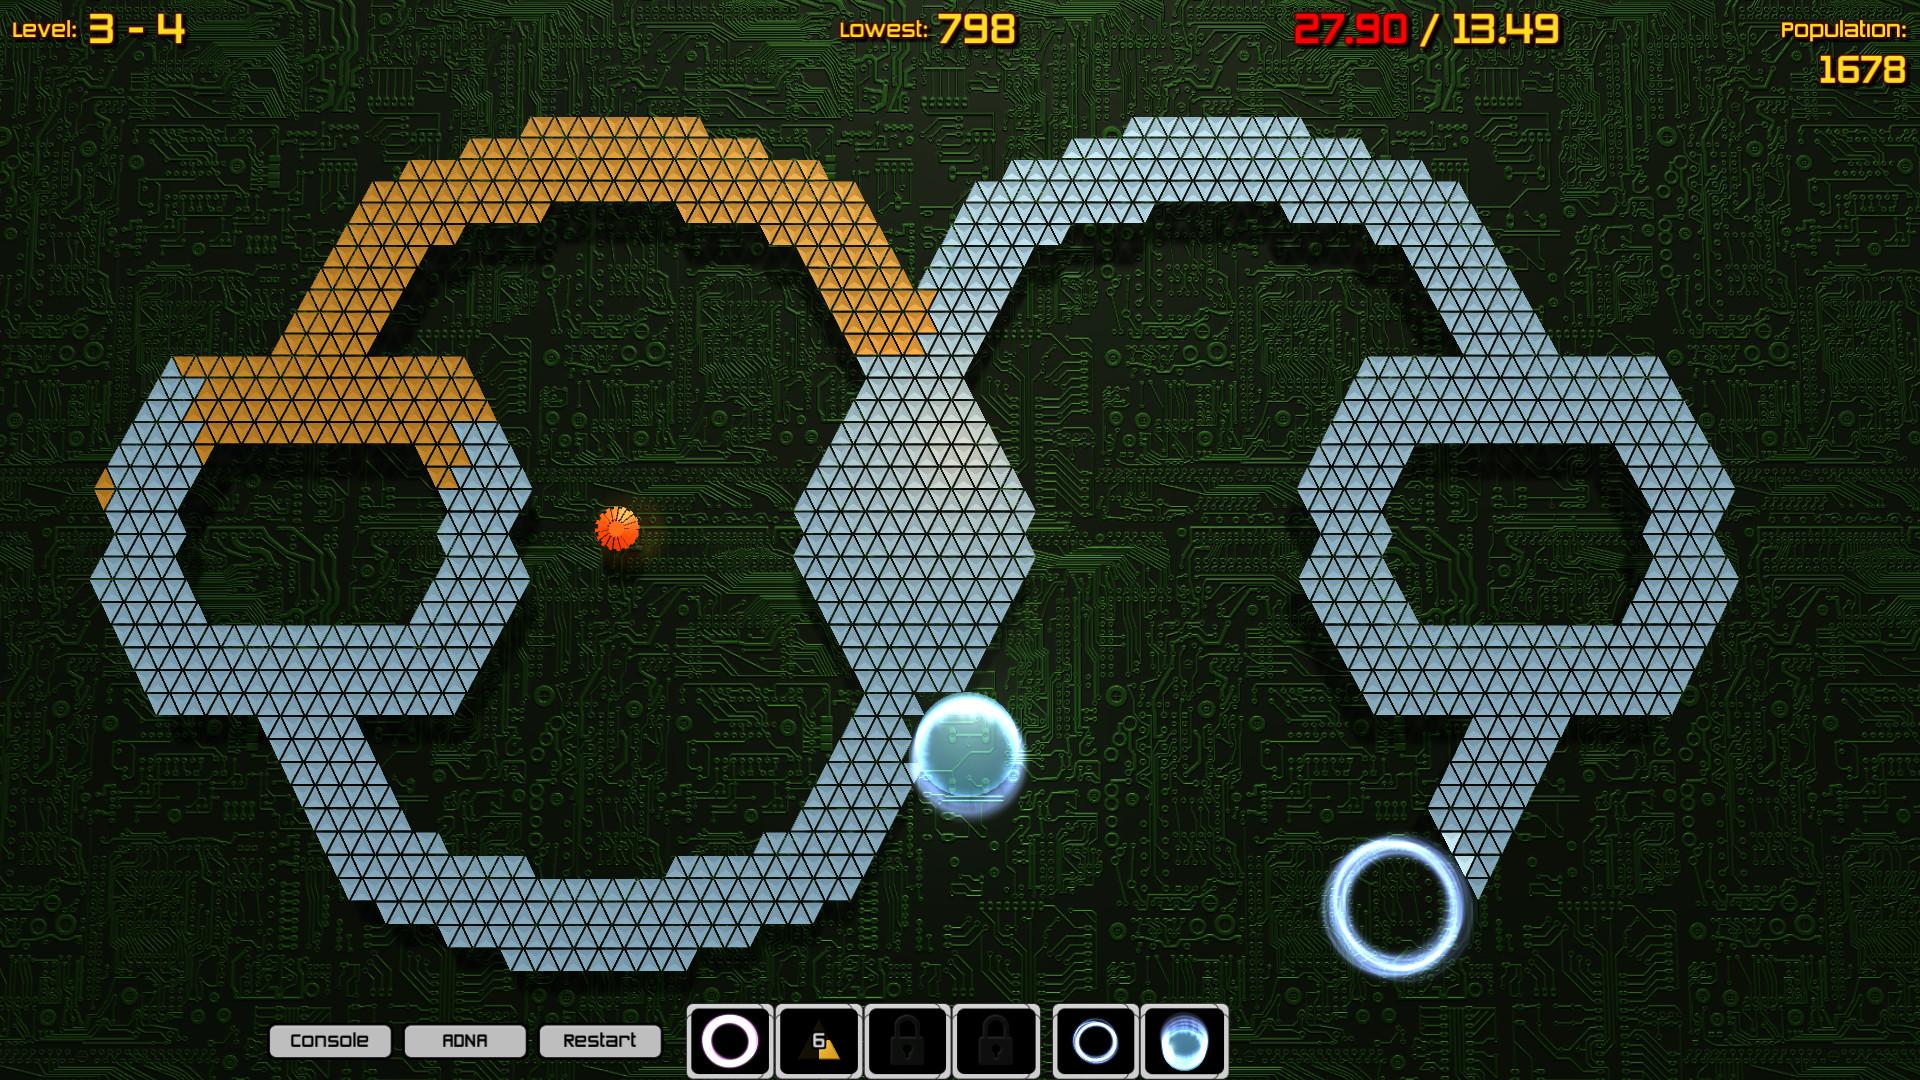 Screenshot №2 from game Nanobots